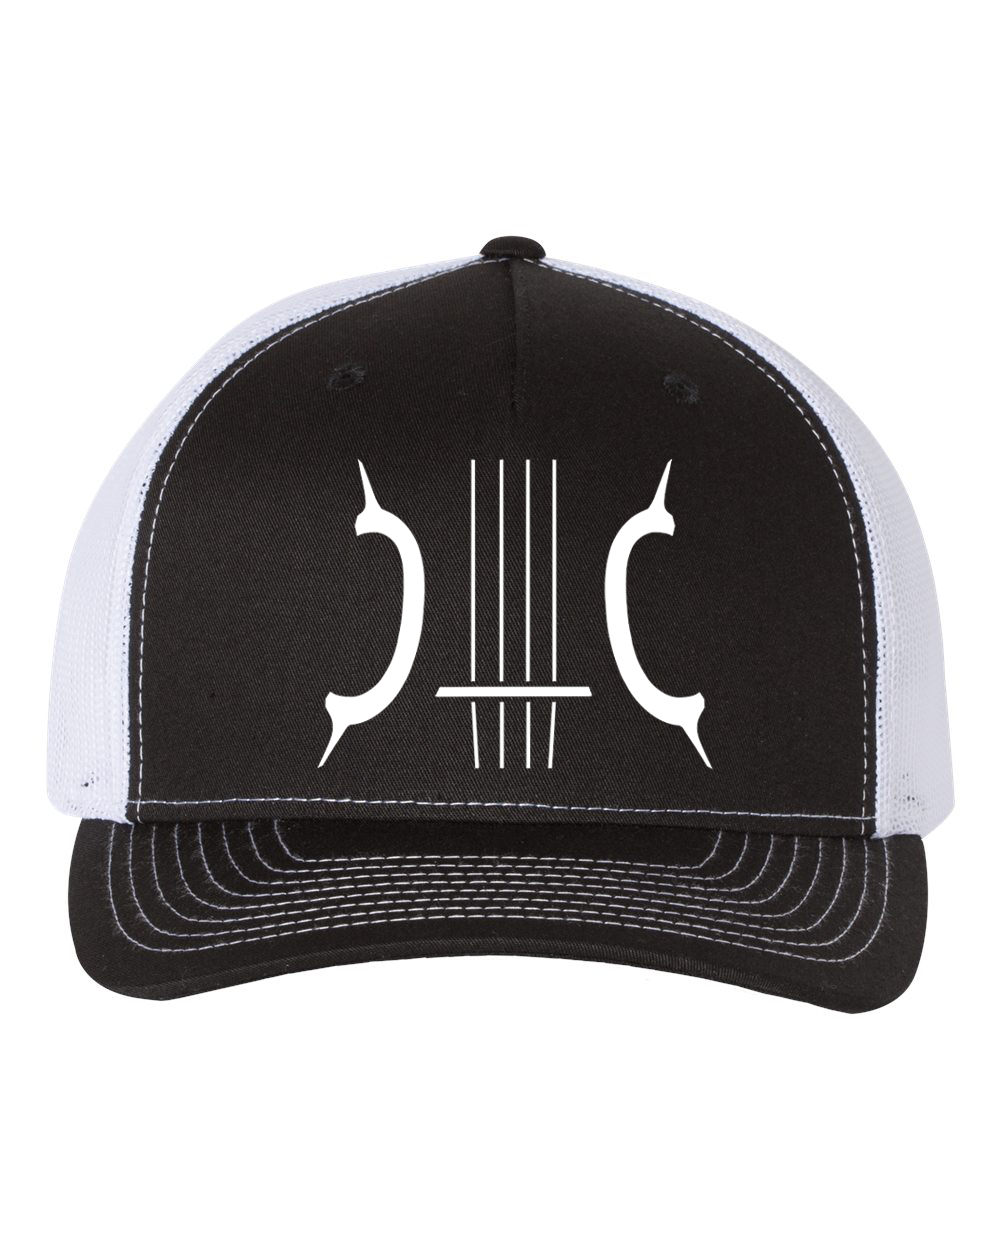 Jake Clayton Logo Trucker Hat - Black/White